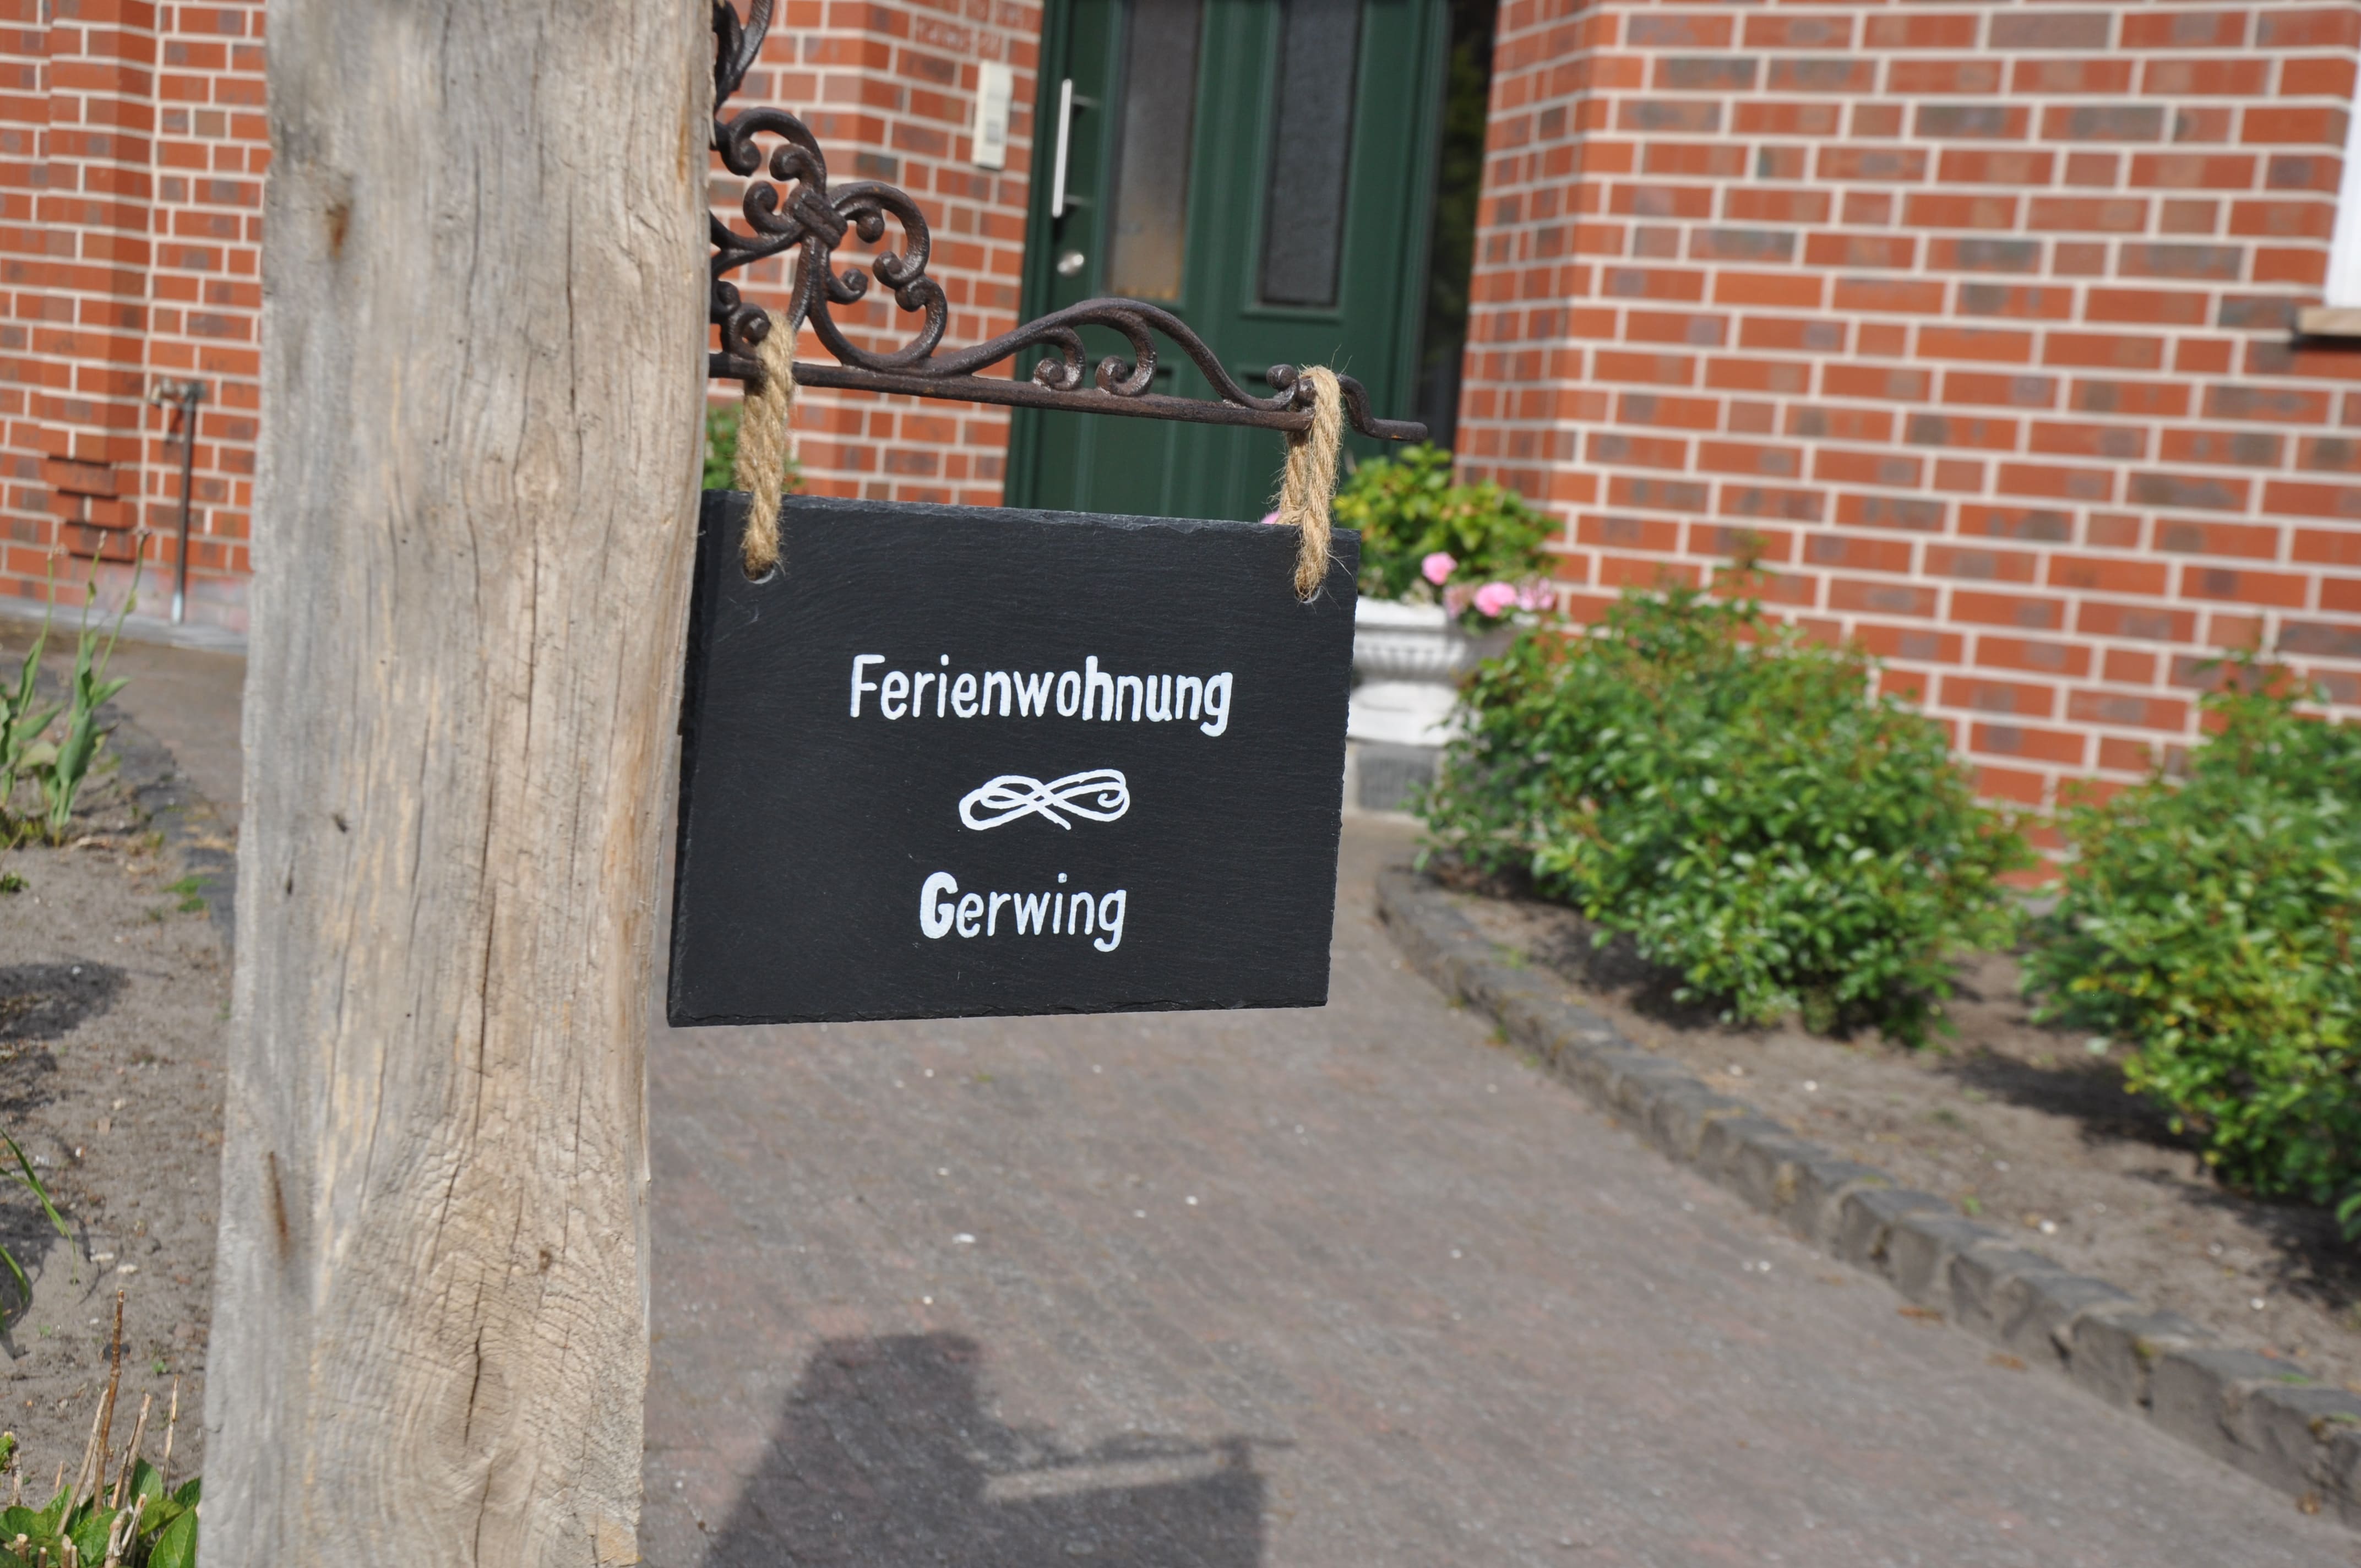 Ferienwohnung Gerwing, (Legden). Ferienwohnung Ger Ferienwohnung in Nordrhein Westfalen